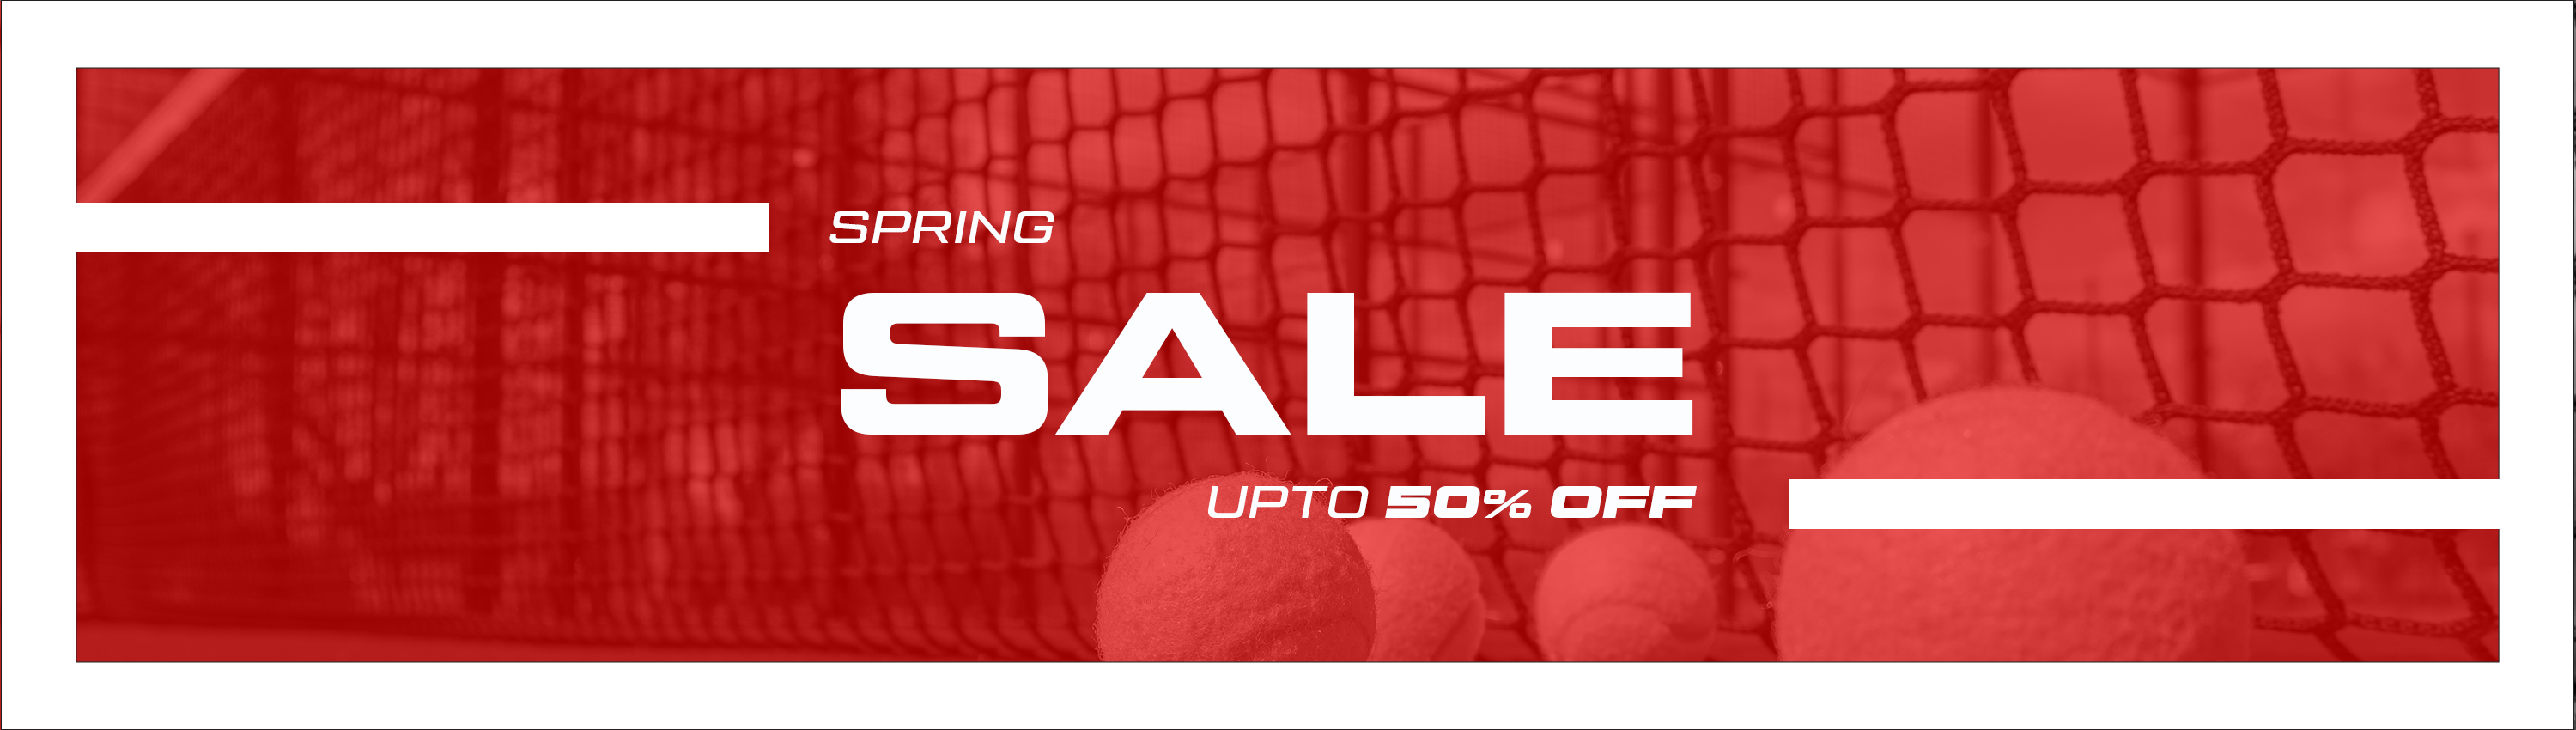 Tennis Bags On Sale